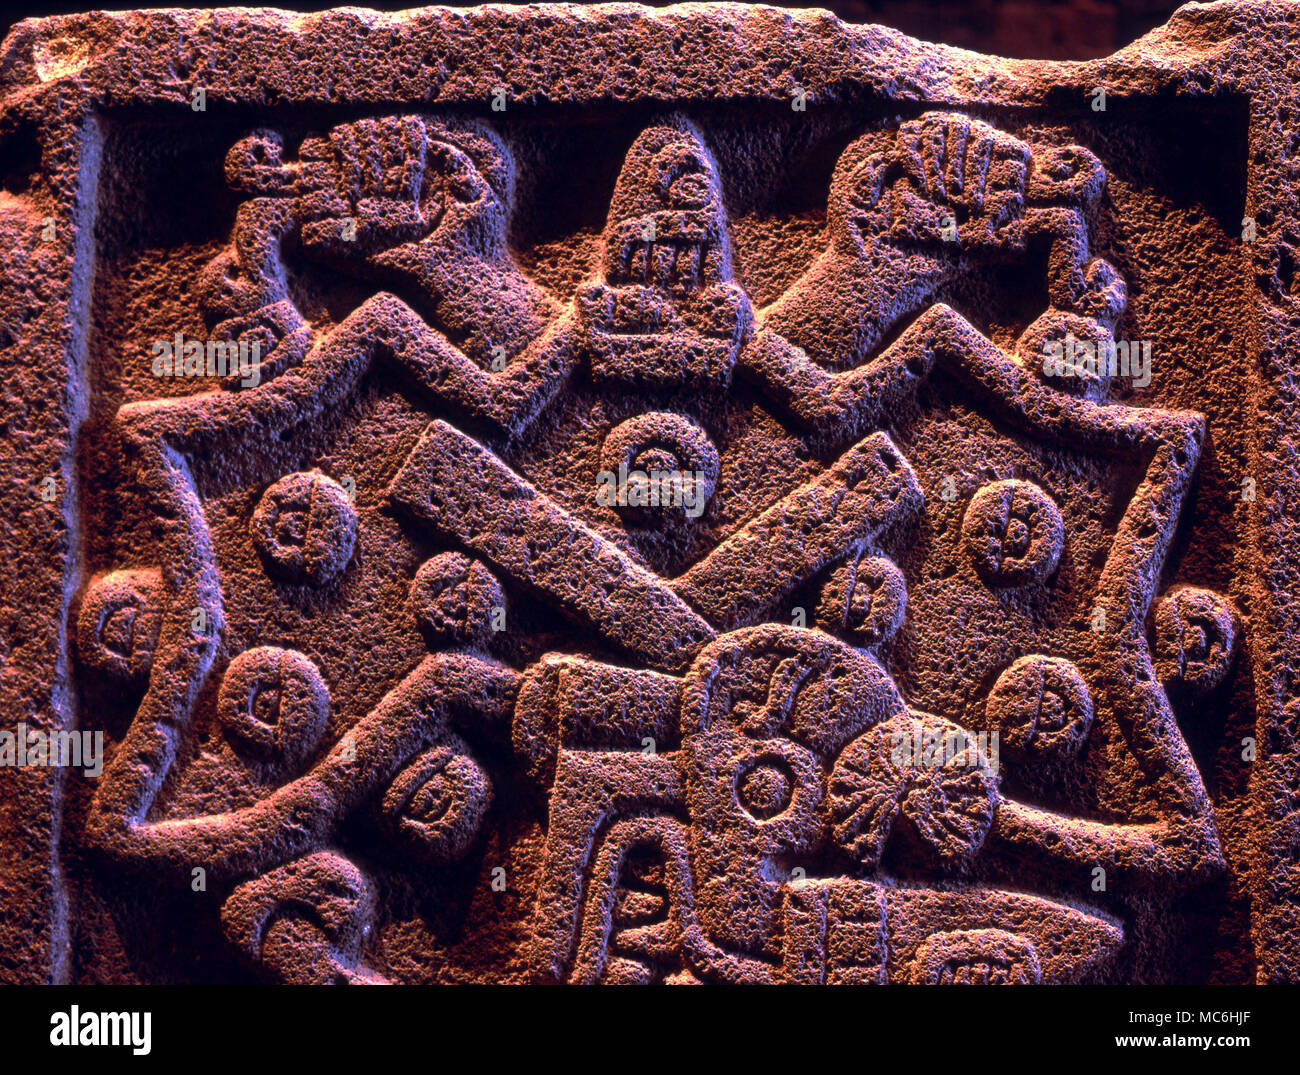 La mythologie mexicaine. Bas-relief de pierre de l'autel Aztec, les quatre côtés de ce qui symbolise les créatures de la nuit. Ceci illustre l'araignée. Musée national d'anthropologie. La ville de Mexico. Banque D'Images